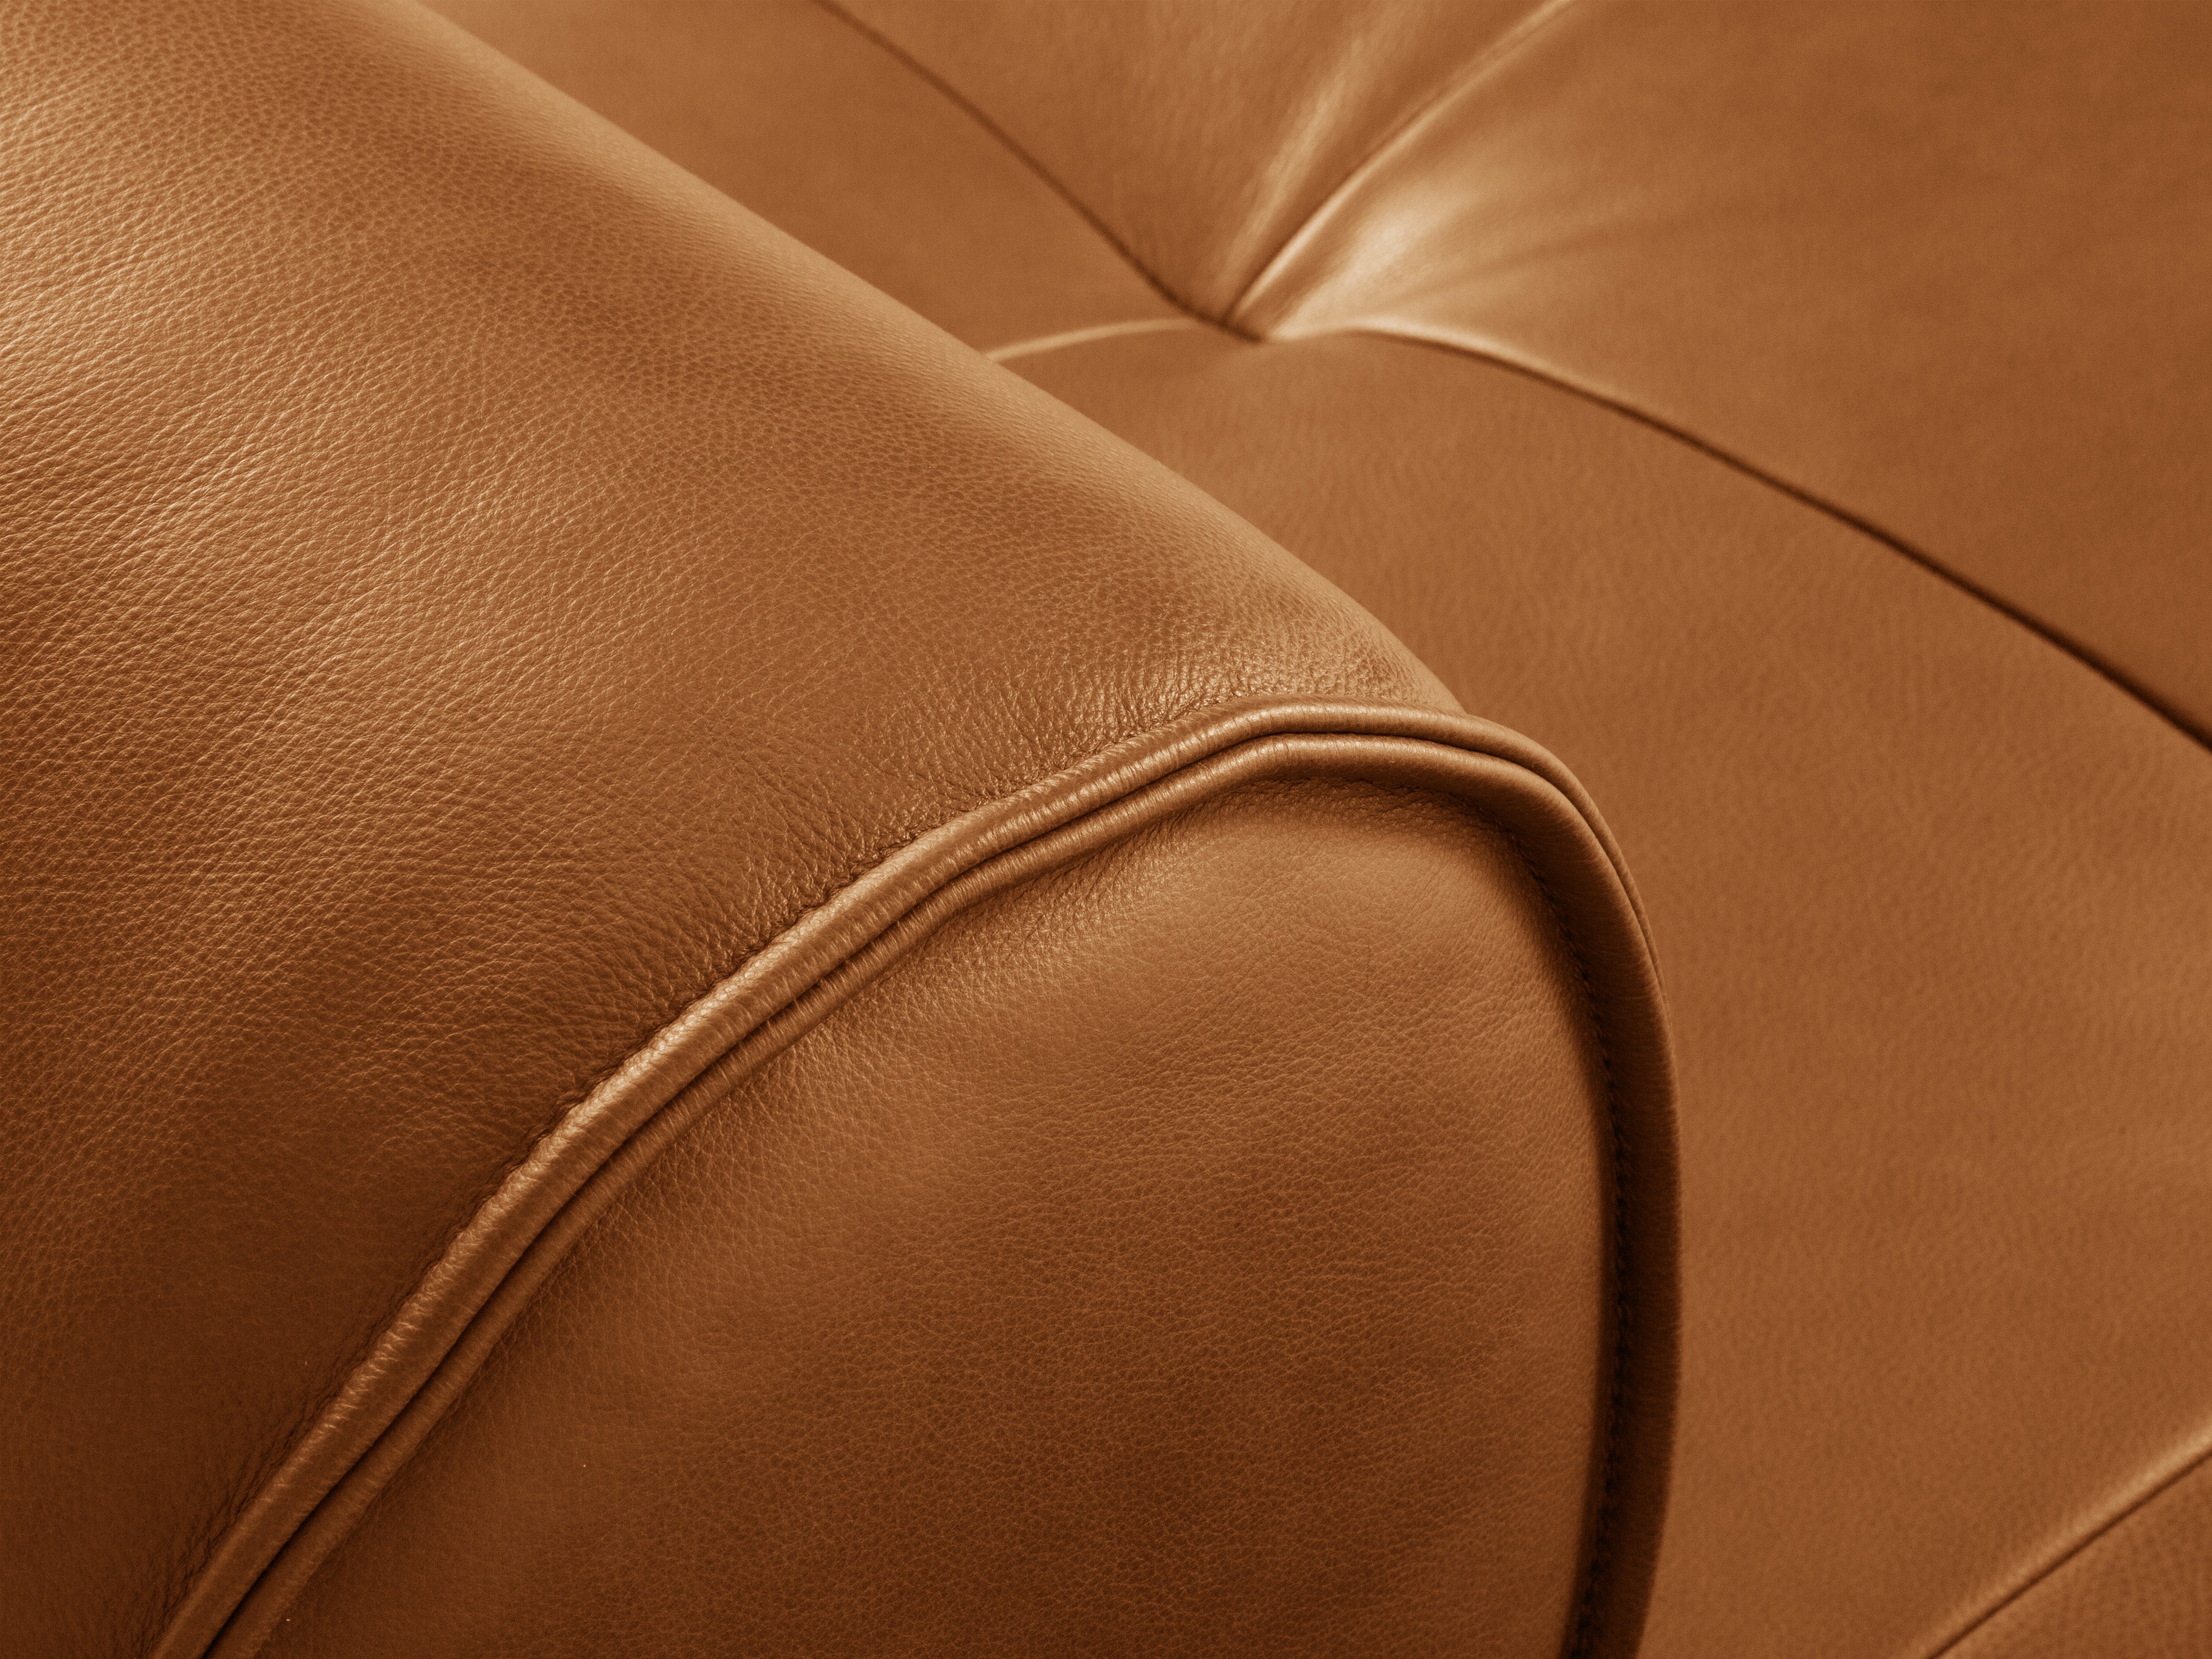 Sofa skórzana 4-osobowa LILY koniakowy, Maison Heritage, Eye on Design